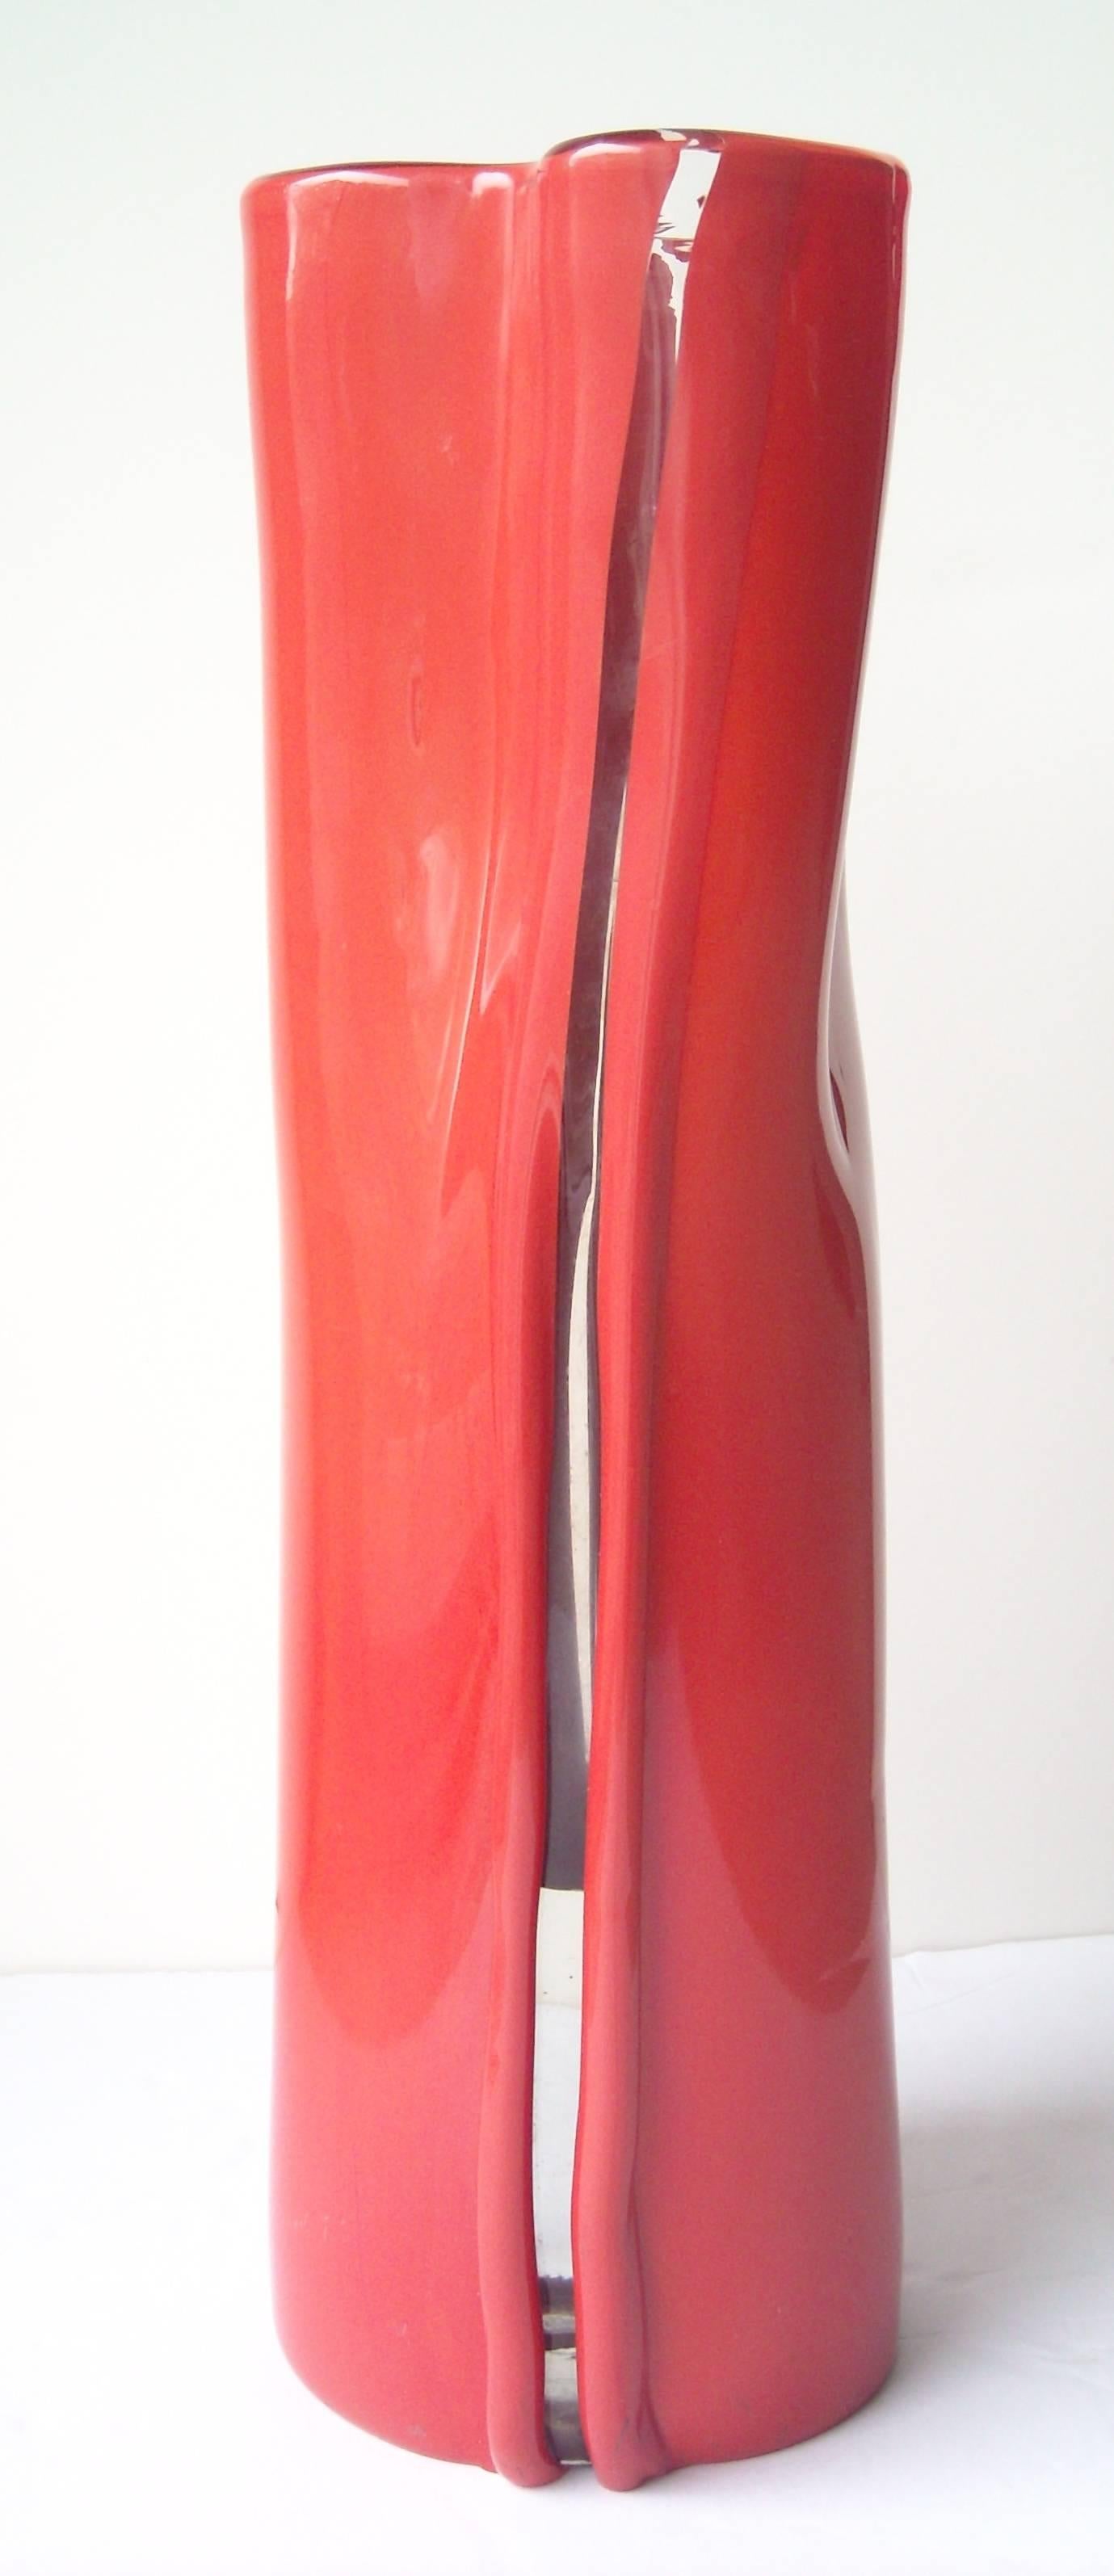 Toni Zuccheri Murano Glass Vase for Venini, 